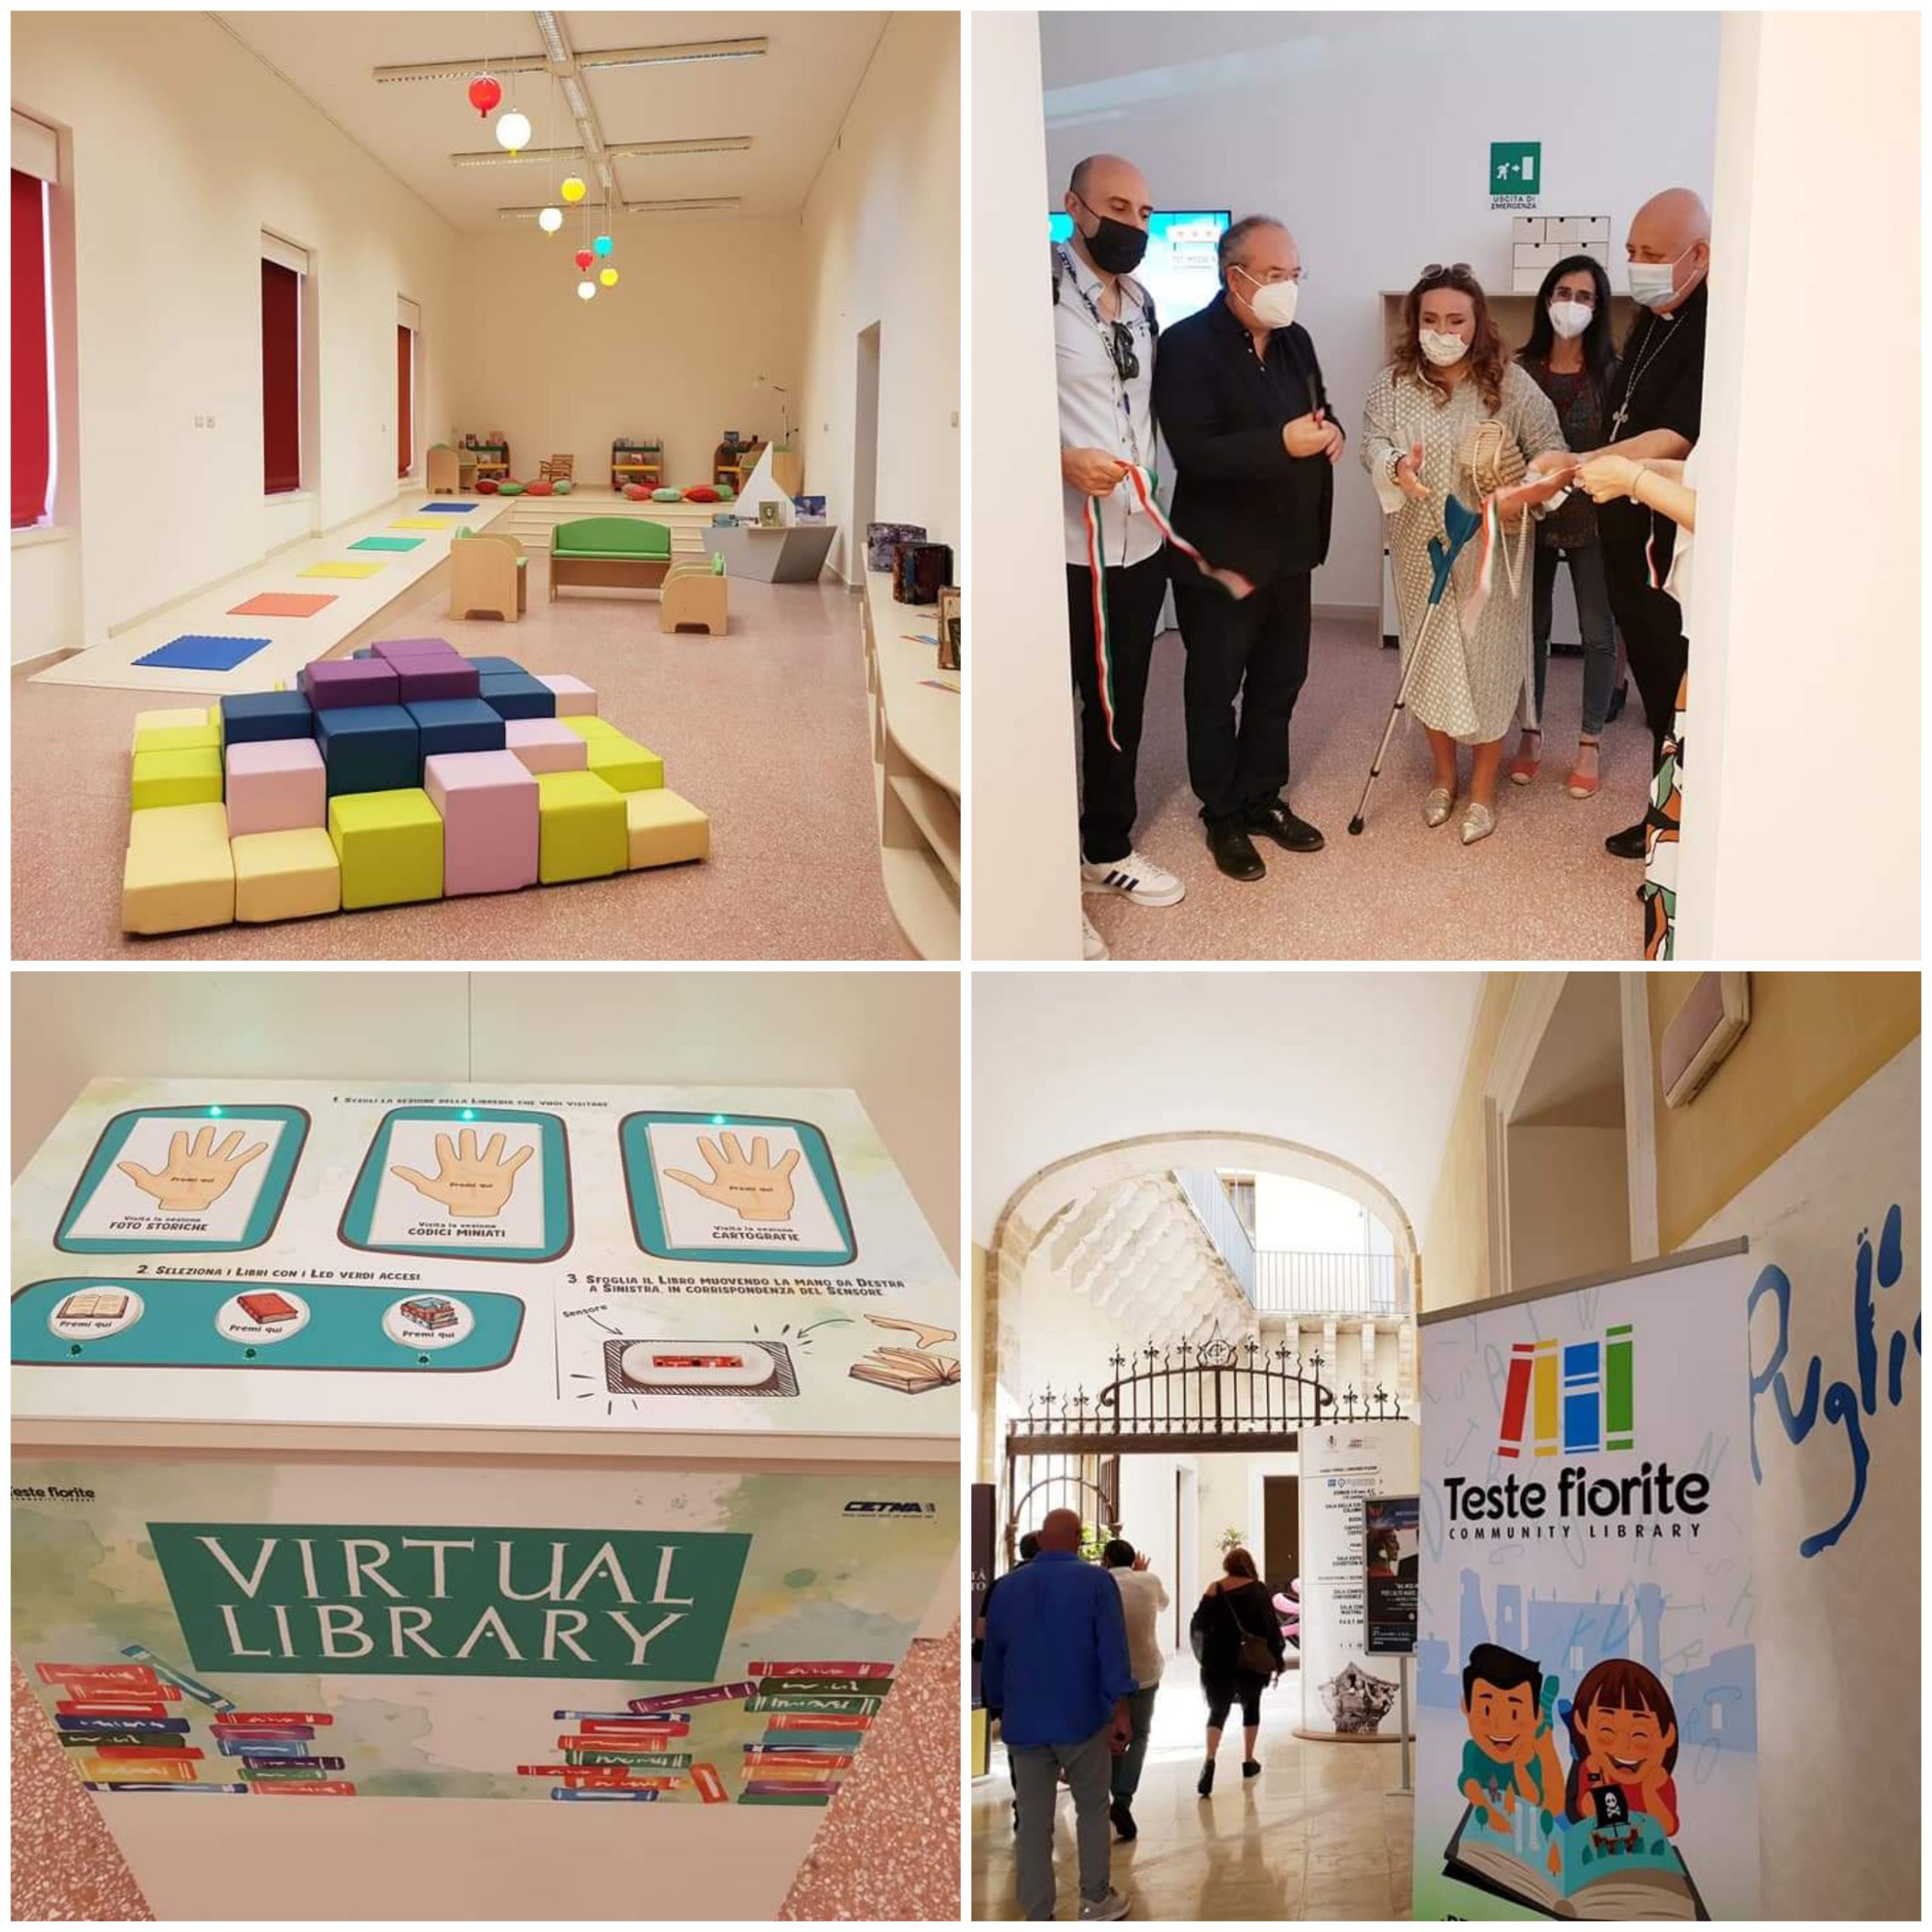 Inaugurata la biblioteca comunale di Palazzo Nervegna, il Sindaco: “Orgoglioso che sia dedicata ai bambini”